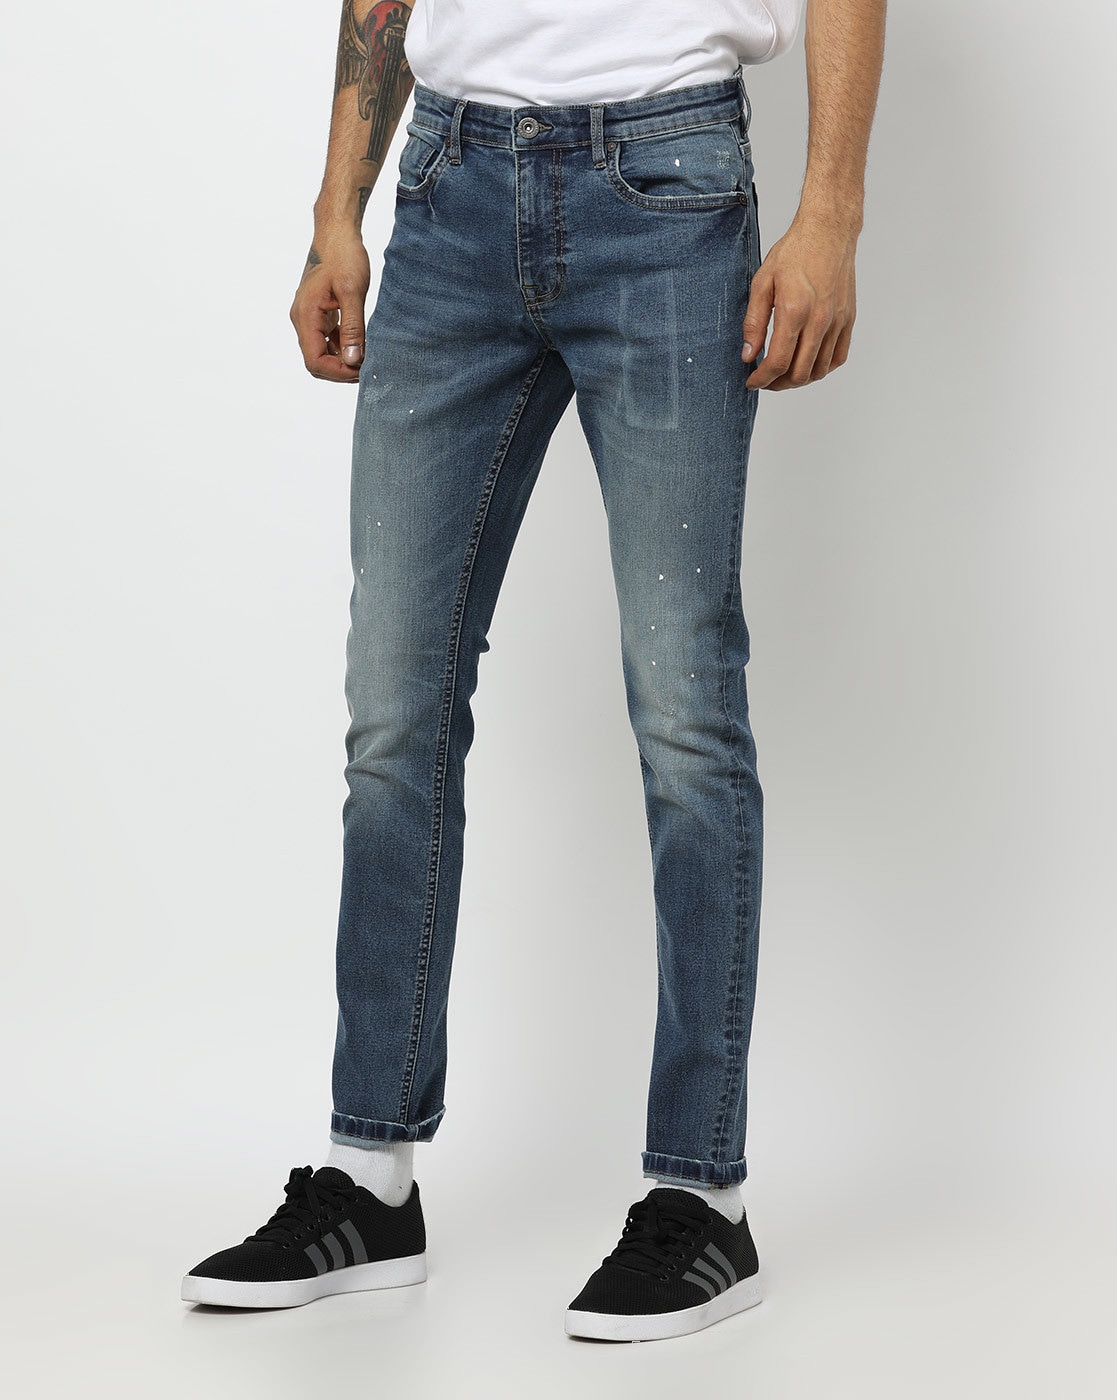 dnmx jeans online